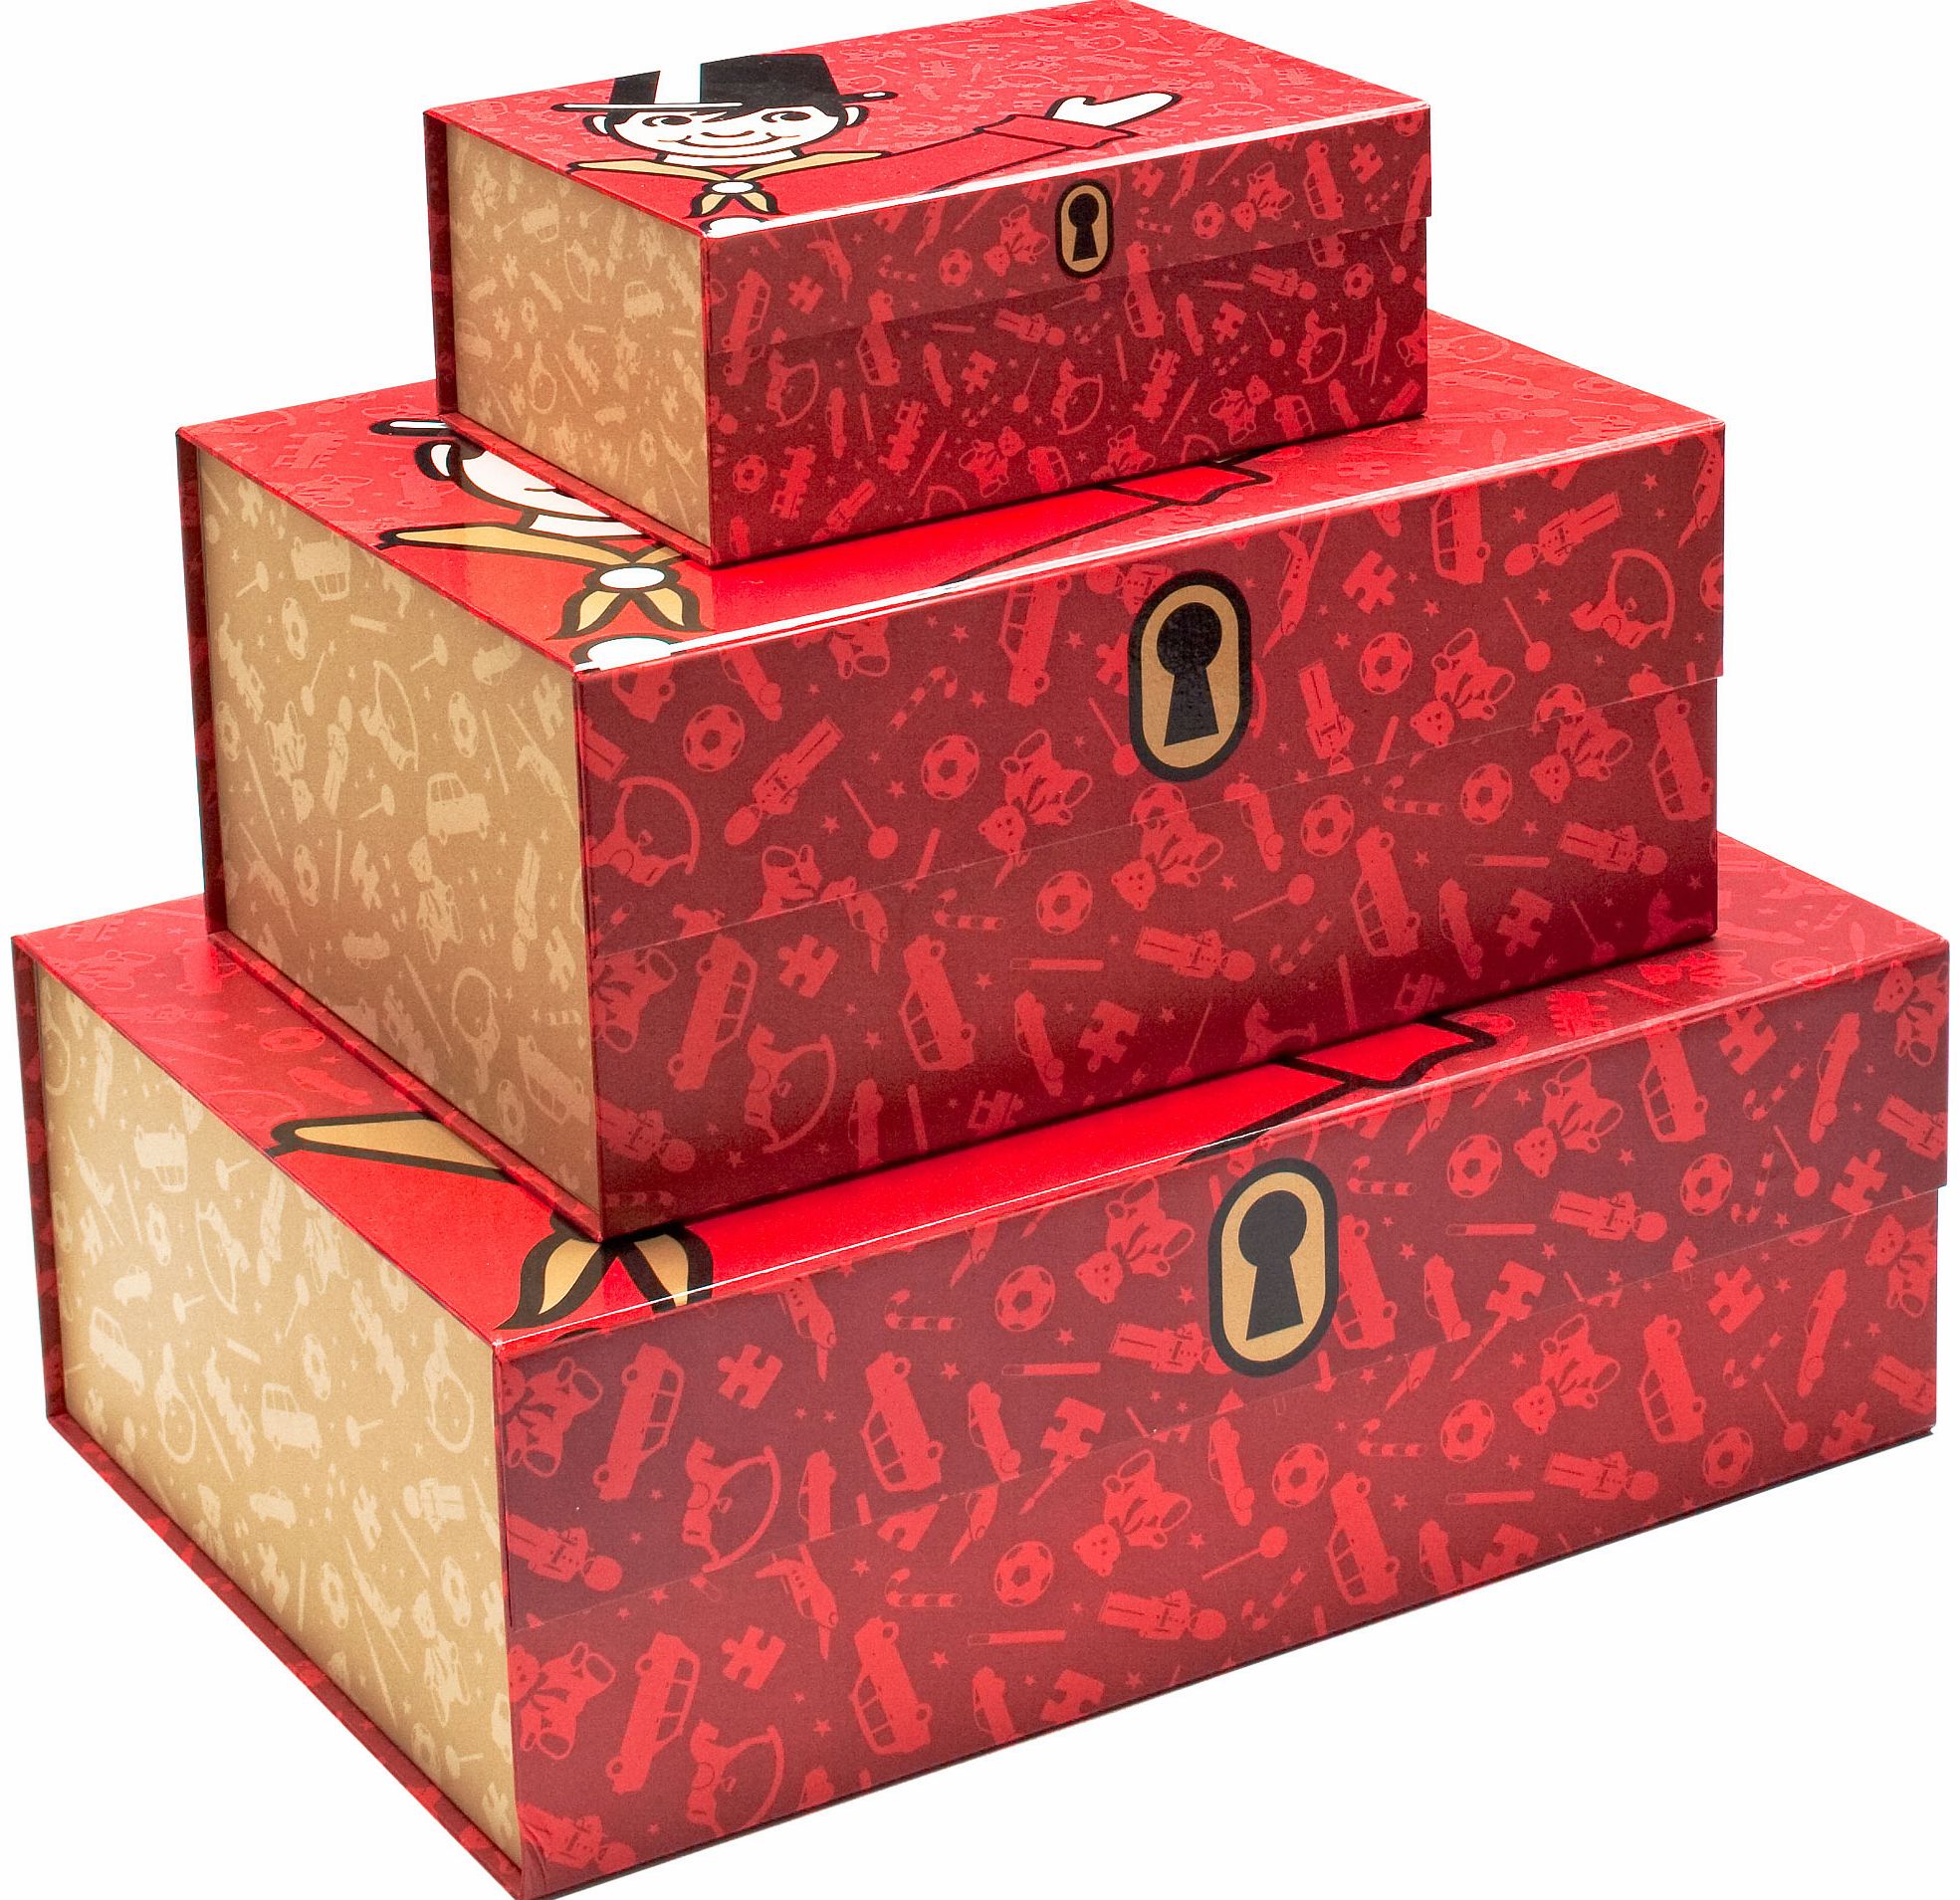 Hamleys Premium Handmade Gift Box Large